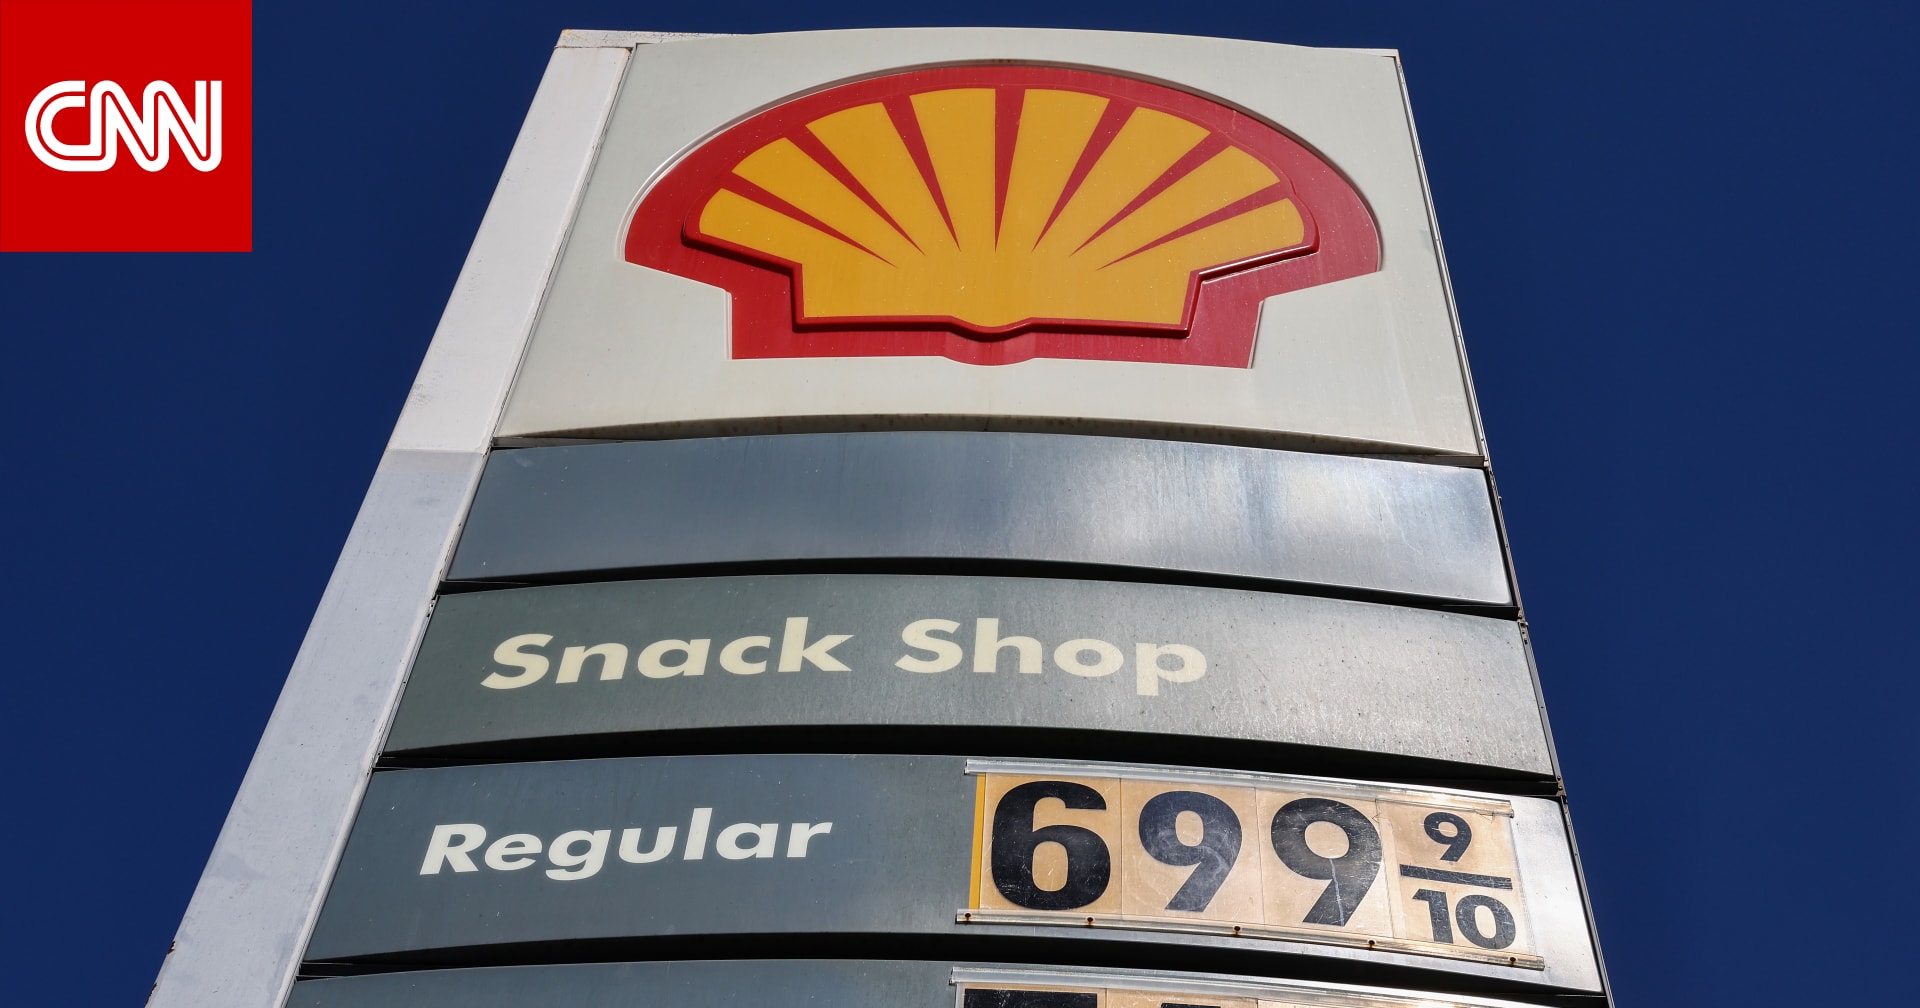 شركة "Shell" تعلن وقف شراء النفط من موسكو وتعليق خدماتها على الأراضي الروسية